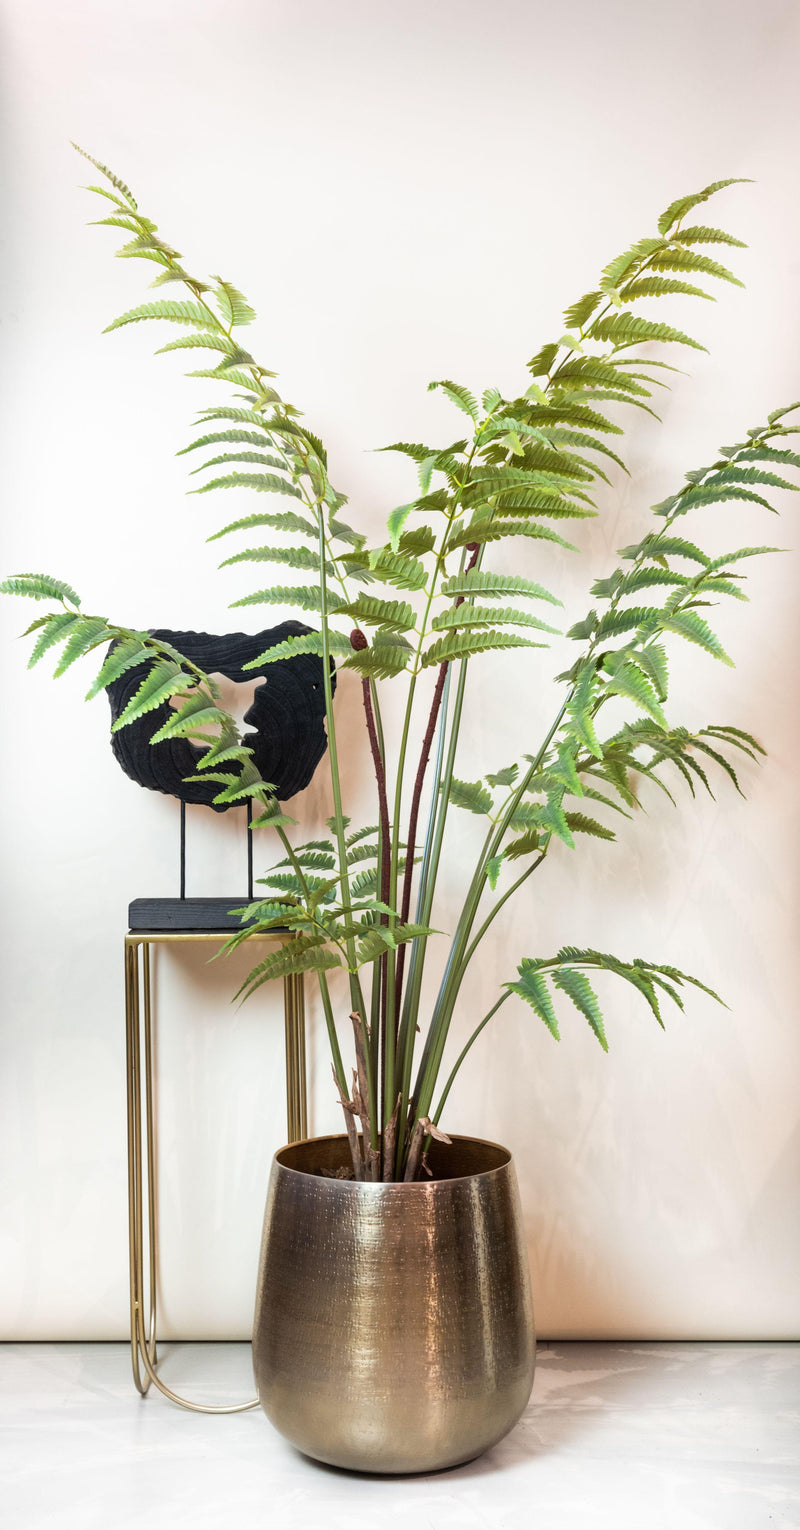 Rumohra Adiantiformis - Lederfarn - 180 cm - kunstpflanze